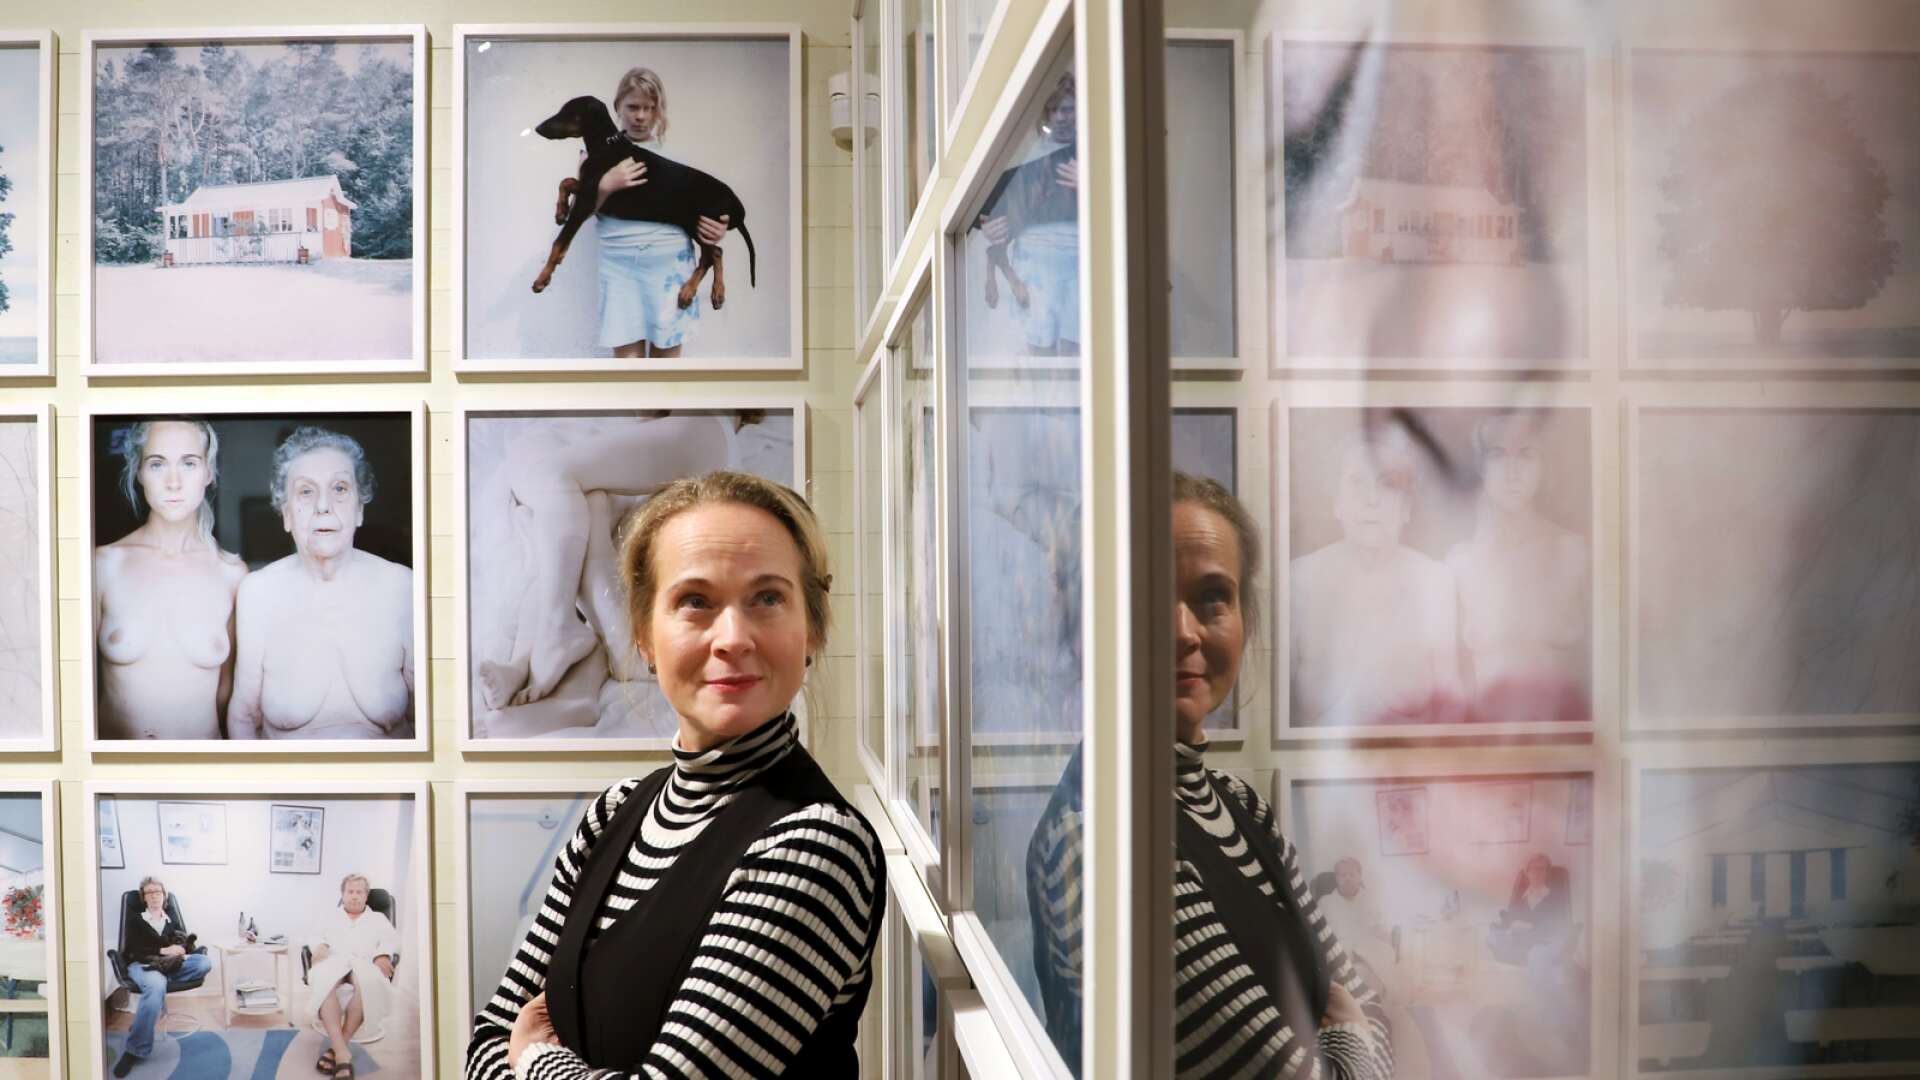 Fotografen Anna Clarén ställer ut på Värmlands museum och visar sina utforskningar av familjeliv och relationer i utställningen Need to be needed. Den invigs under fredagen och visas till den 10 september.